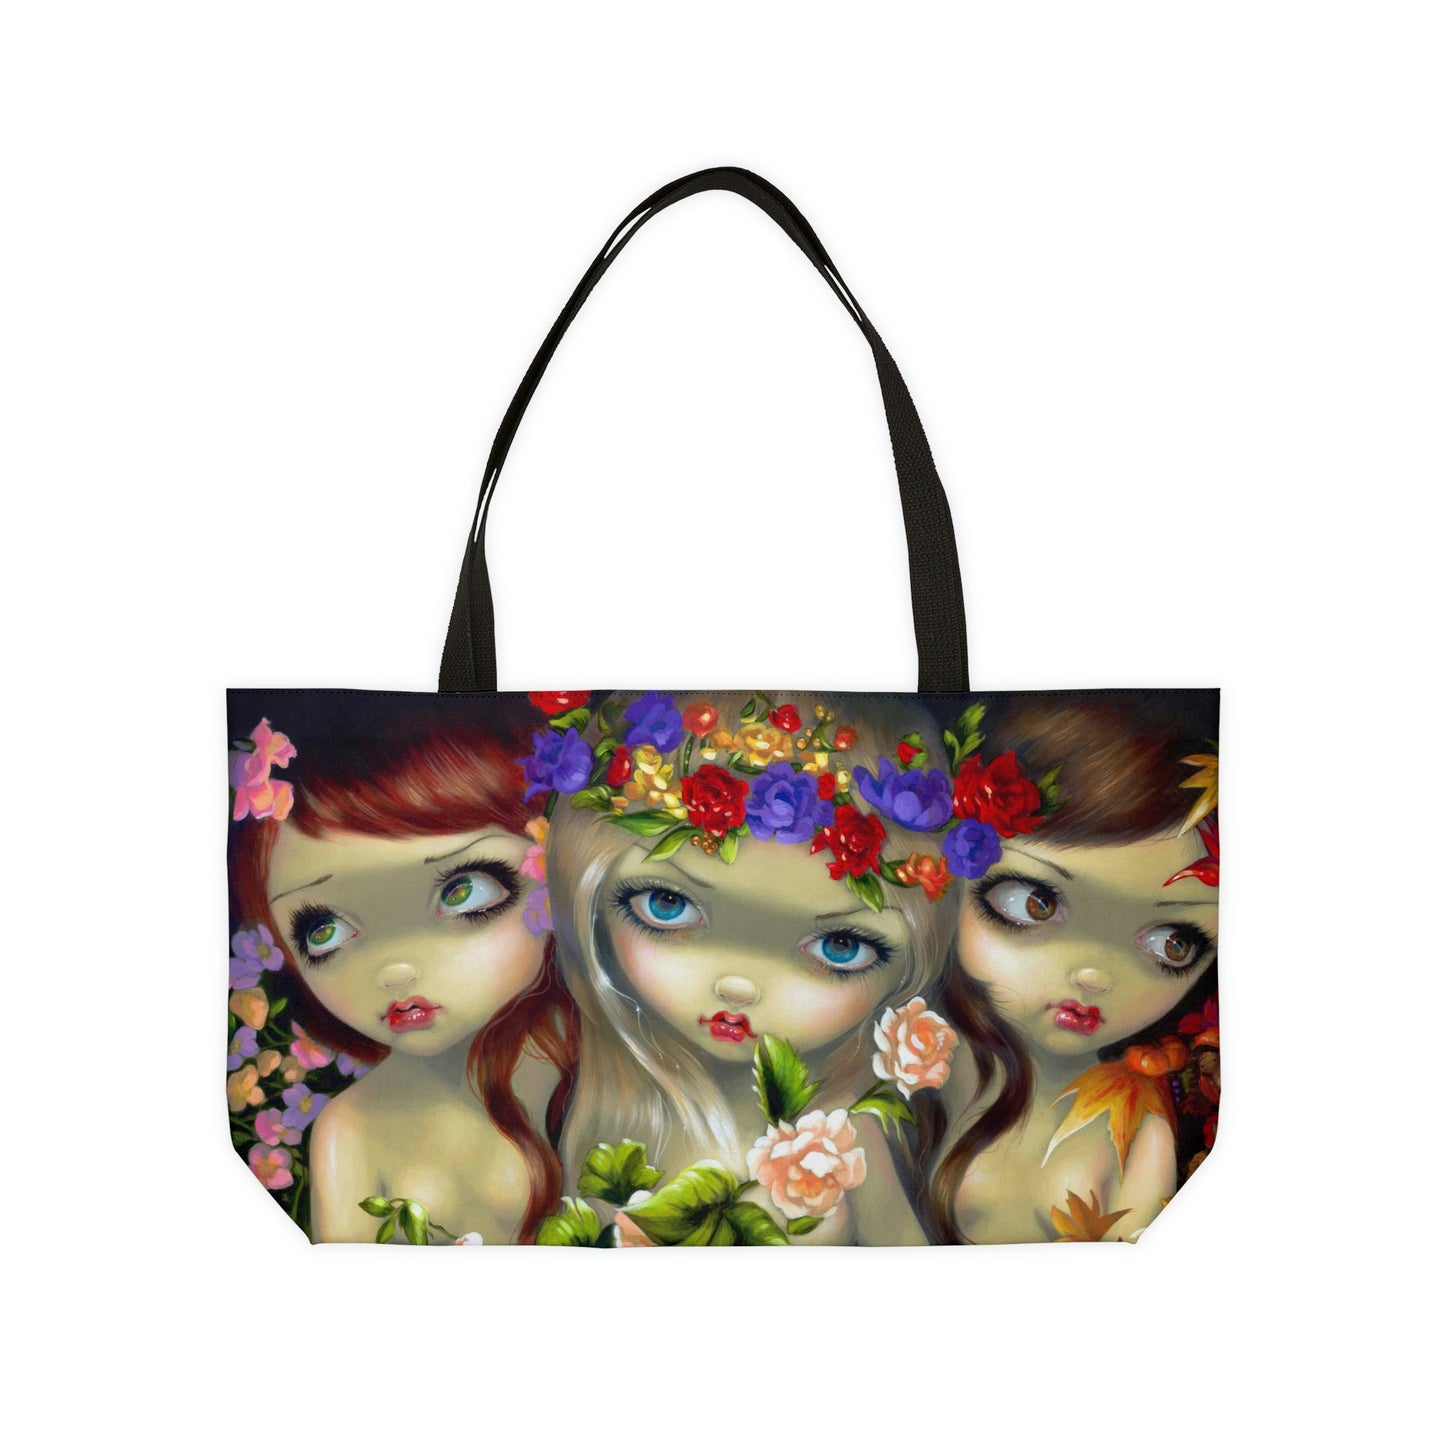 The Goddess of Love Weekender Tote Bag